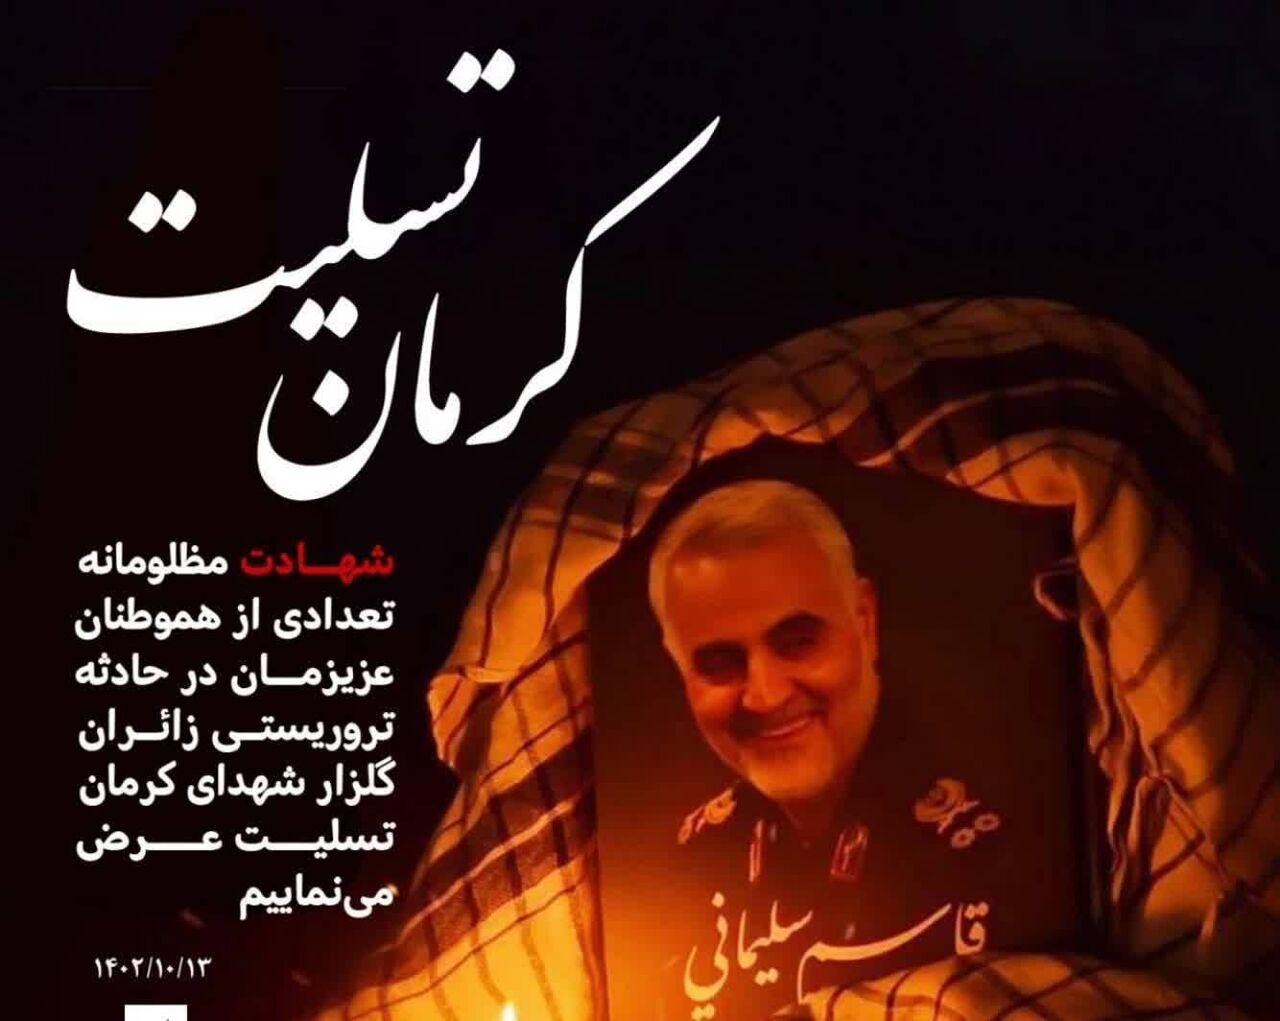 تسلیت درپی شهادت زائران مزار شهید سلیمانی در حادثه تروریستی در مسیر گلزار شهدای کرمان